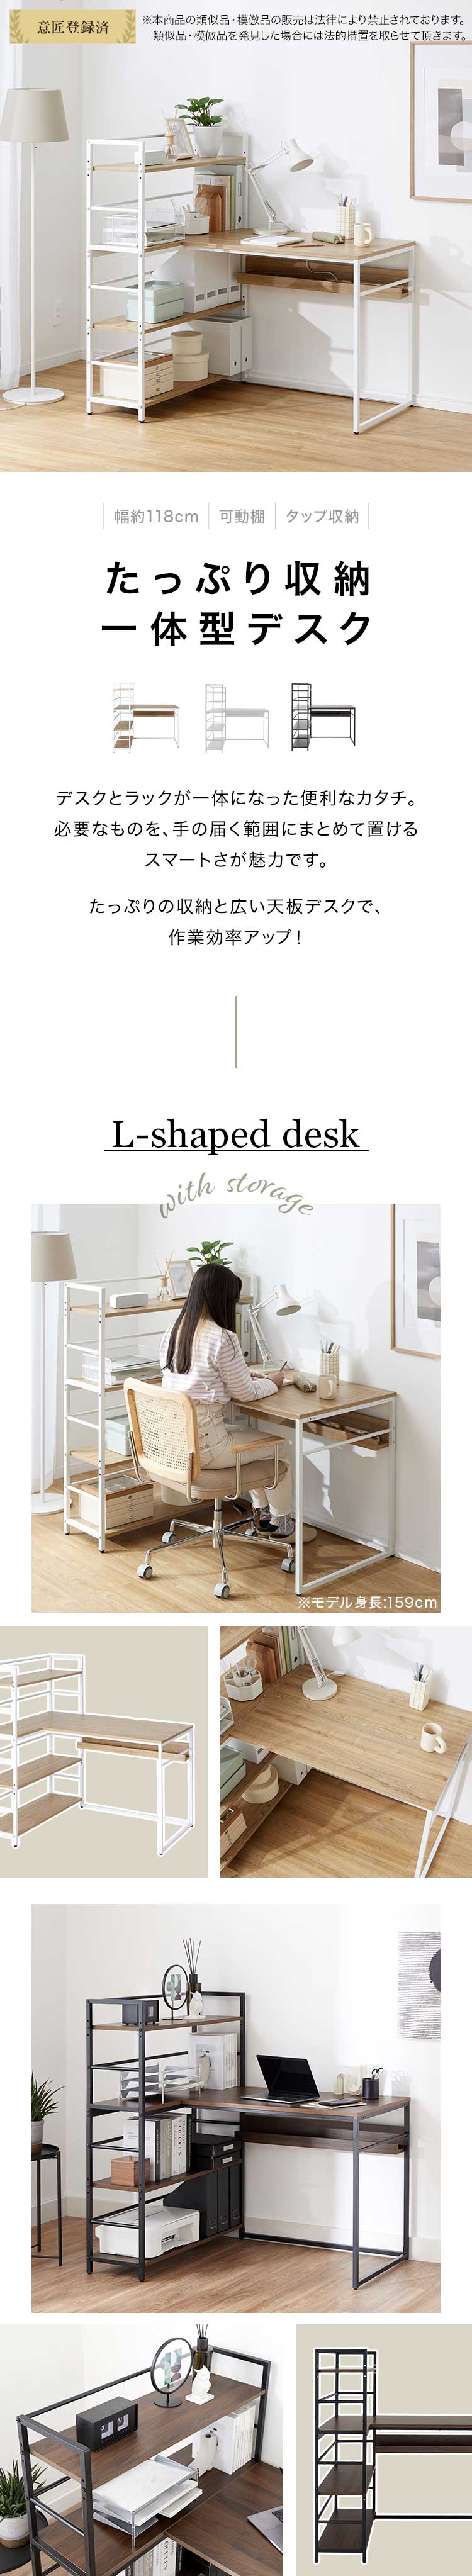 幅150cmデスク 北欧デザイン カウンターテーブル テーブル 机テレワーク シンプルデザイン 木目調 ナチュラル おしゃれ家具